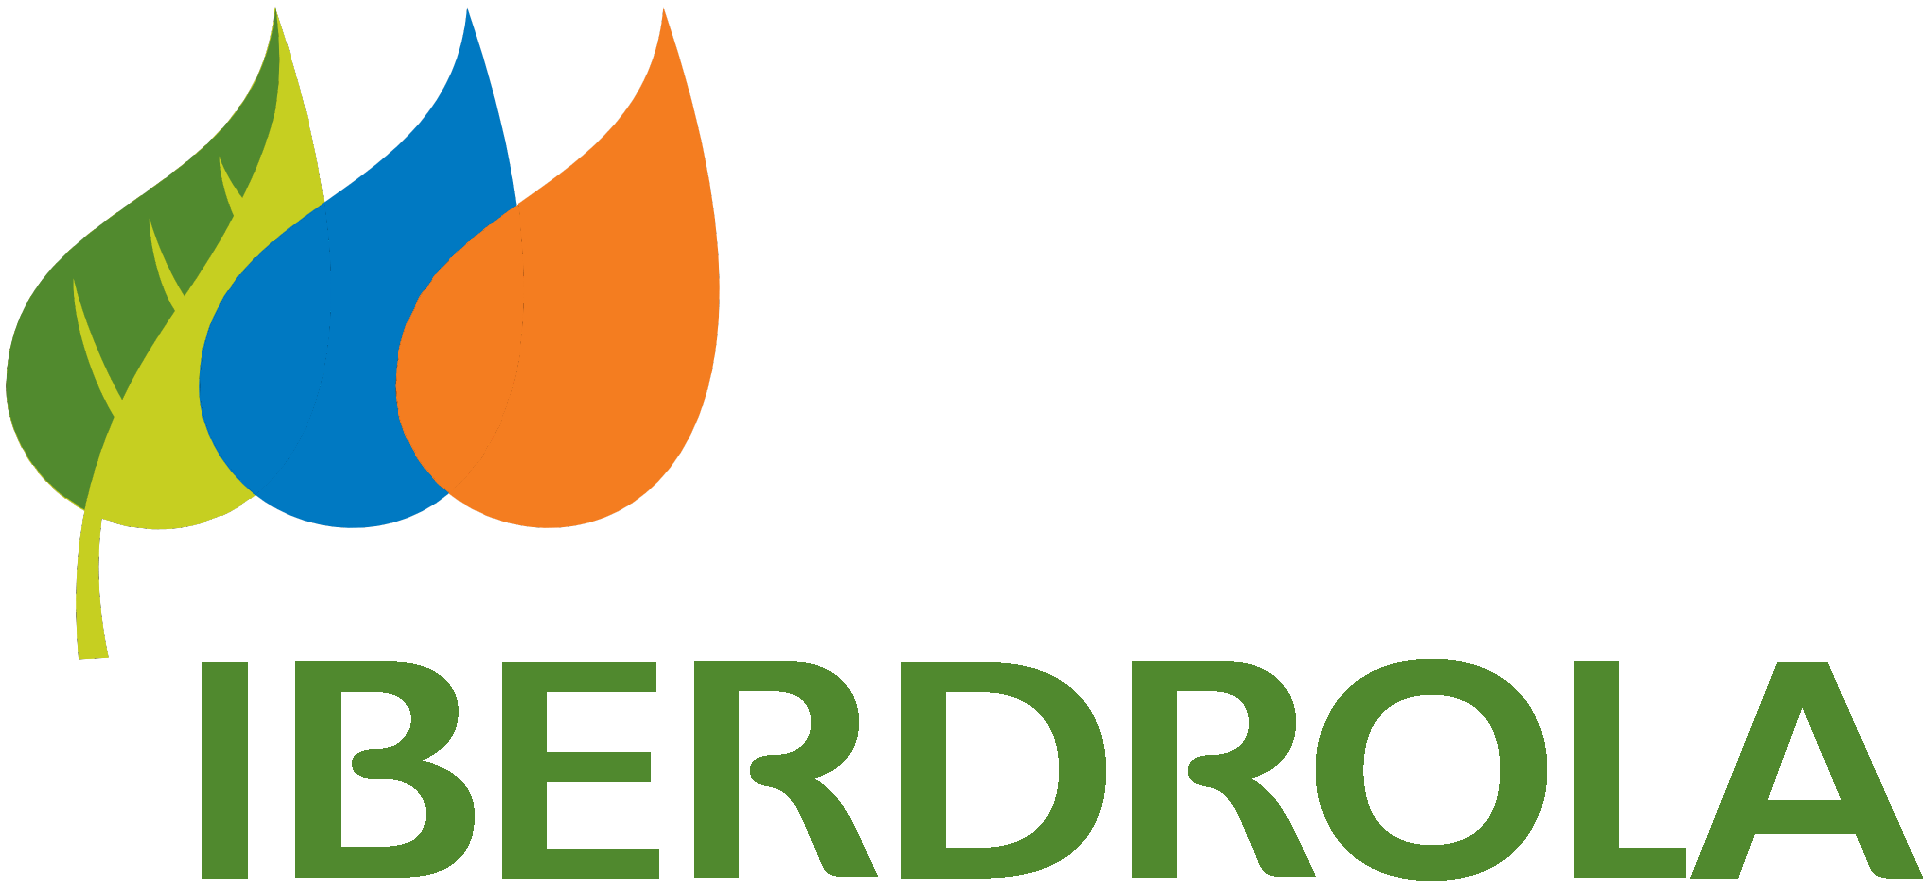 Iberdrola Logo png